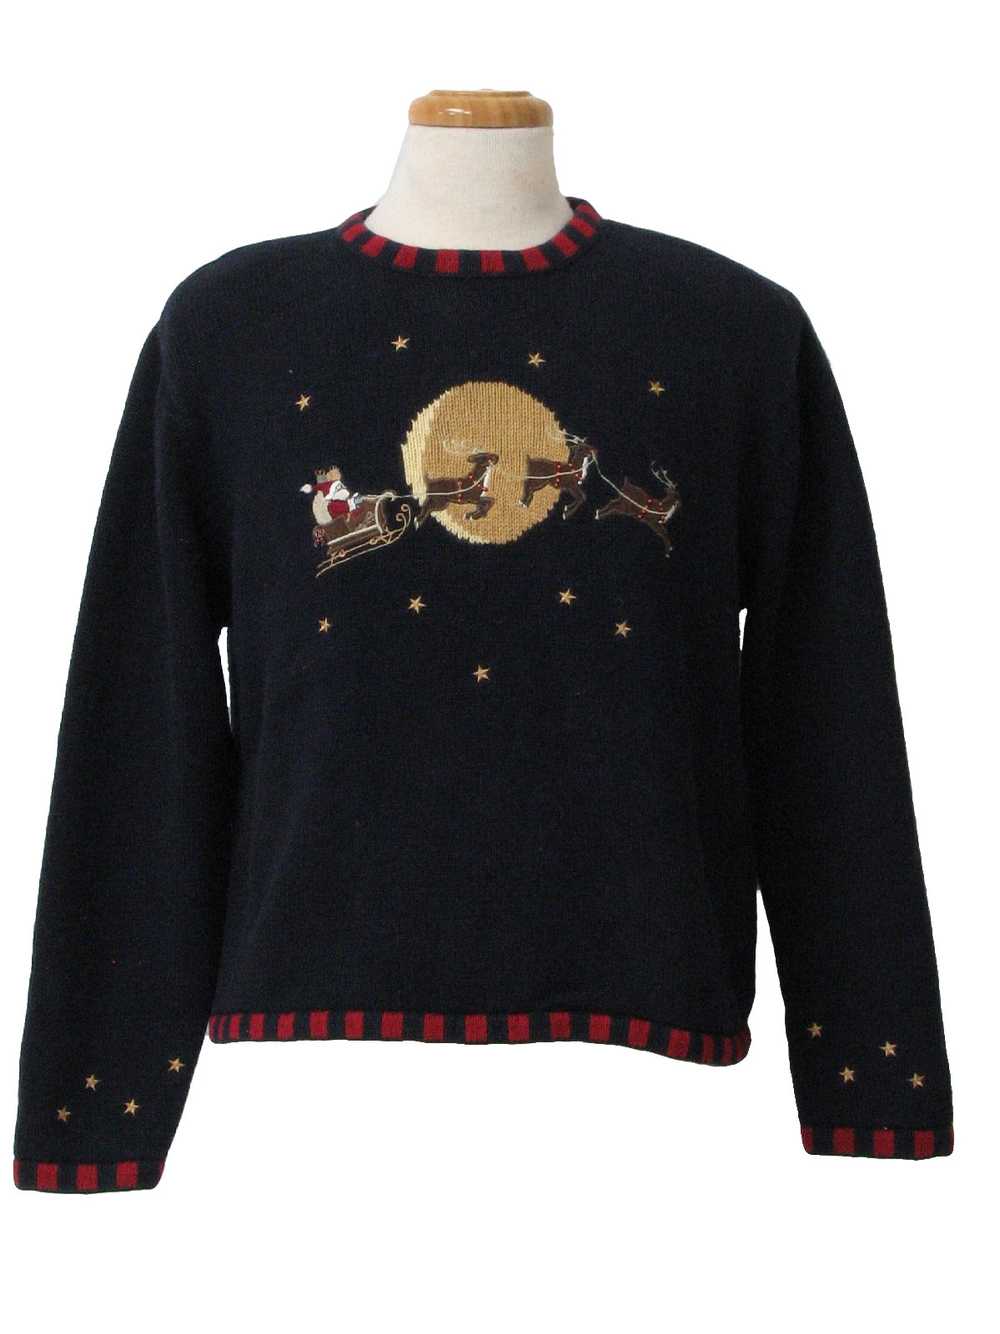 Christopher Banks Womens Ugly Christmas Sweater - image 1